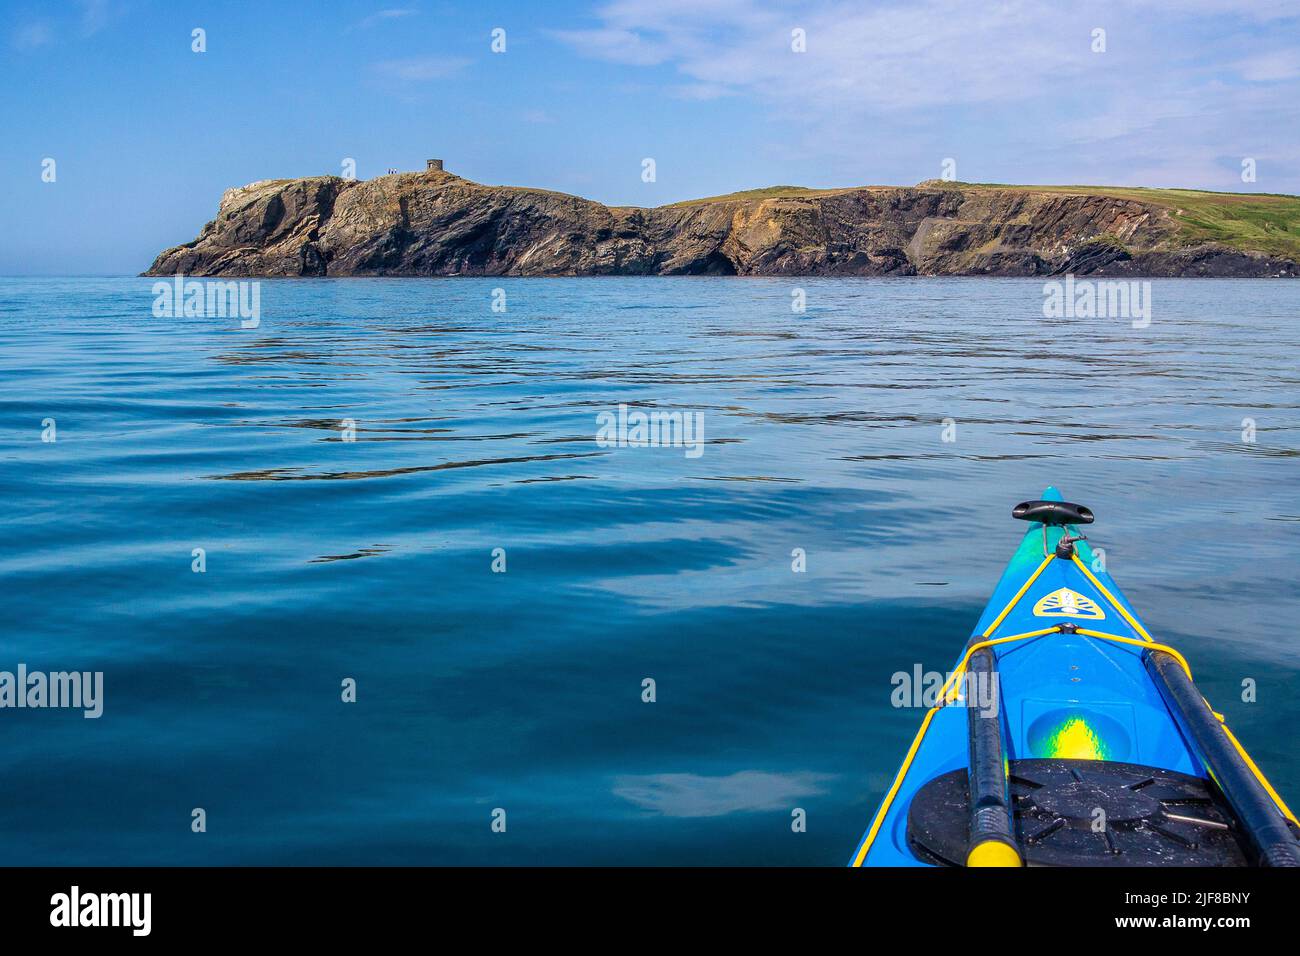 Kayak de mer au large d'Abereiddy sur la côte de Pembrokeshire au pays de Galles Banque D'Images